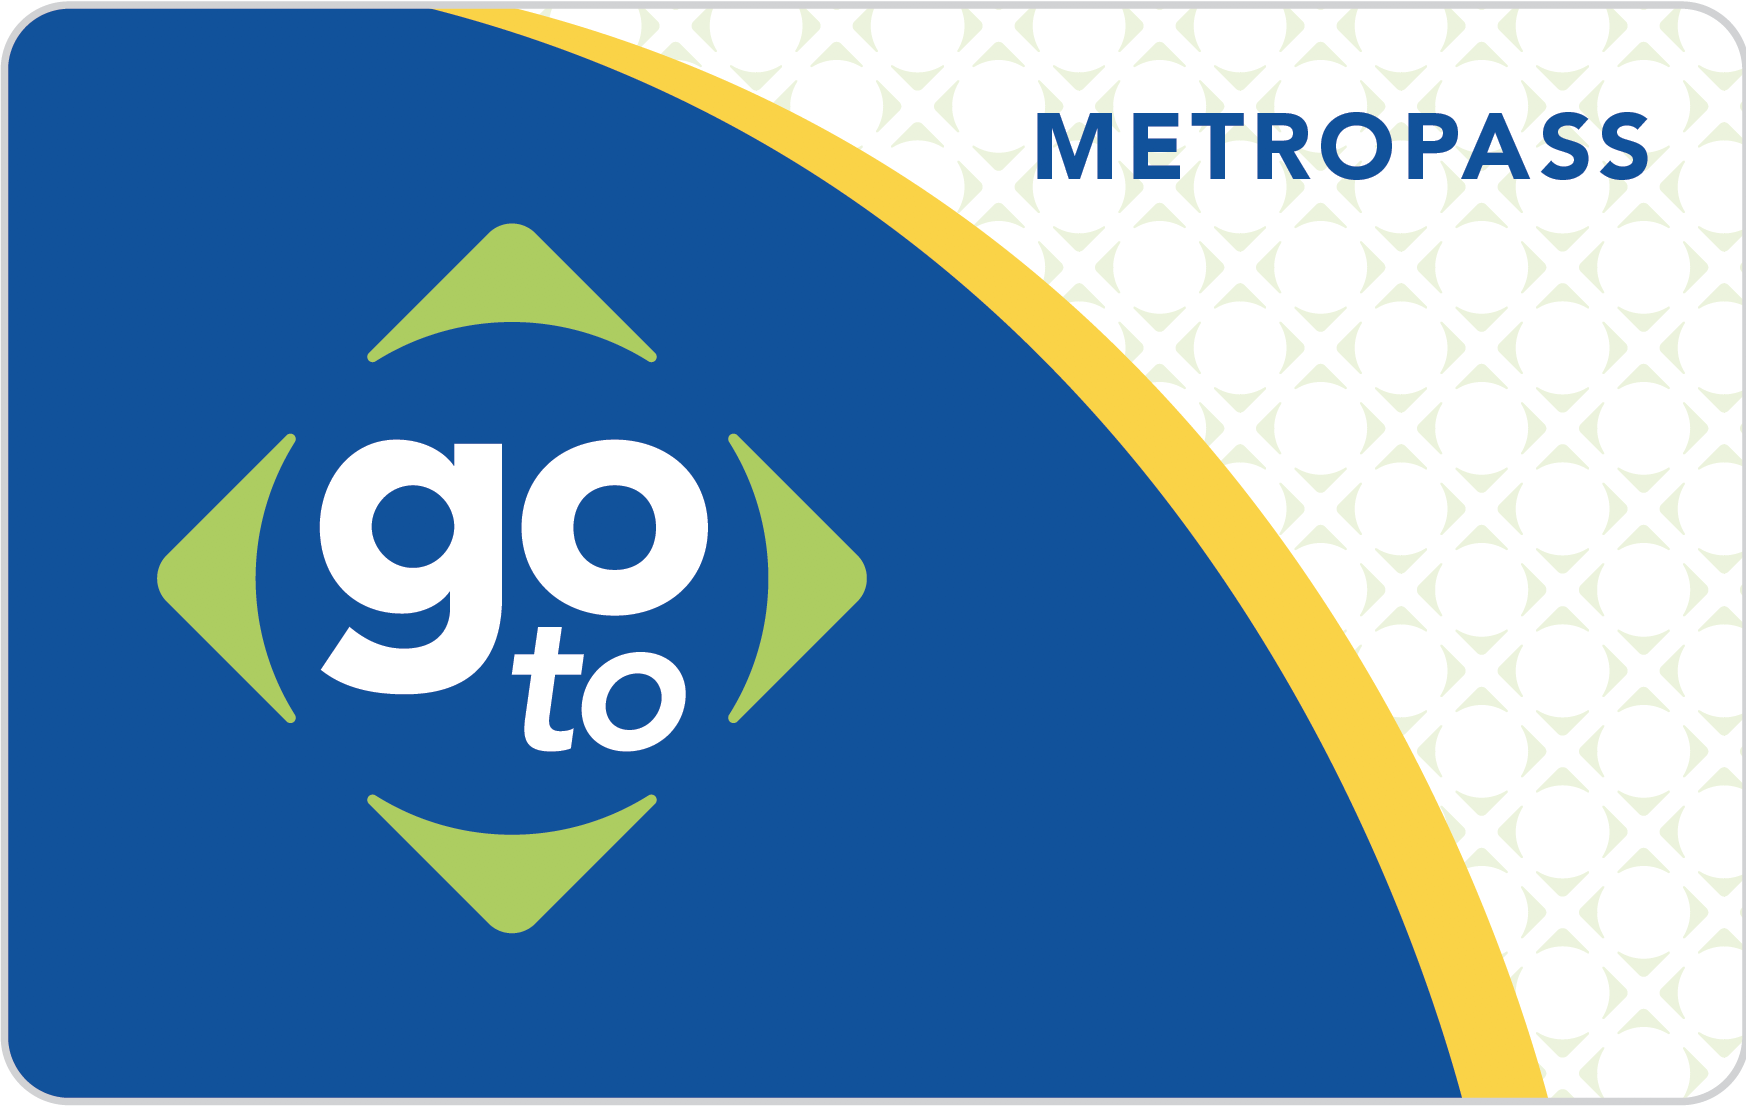 Pass Programs Metro Transit